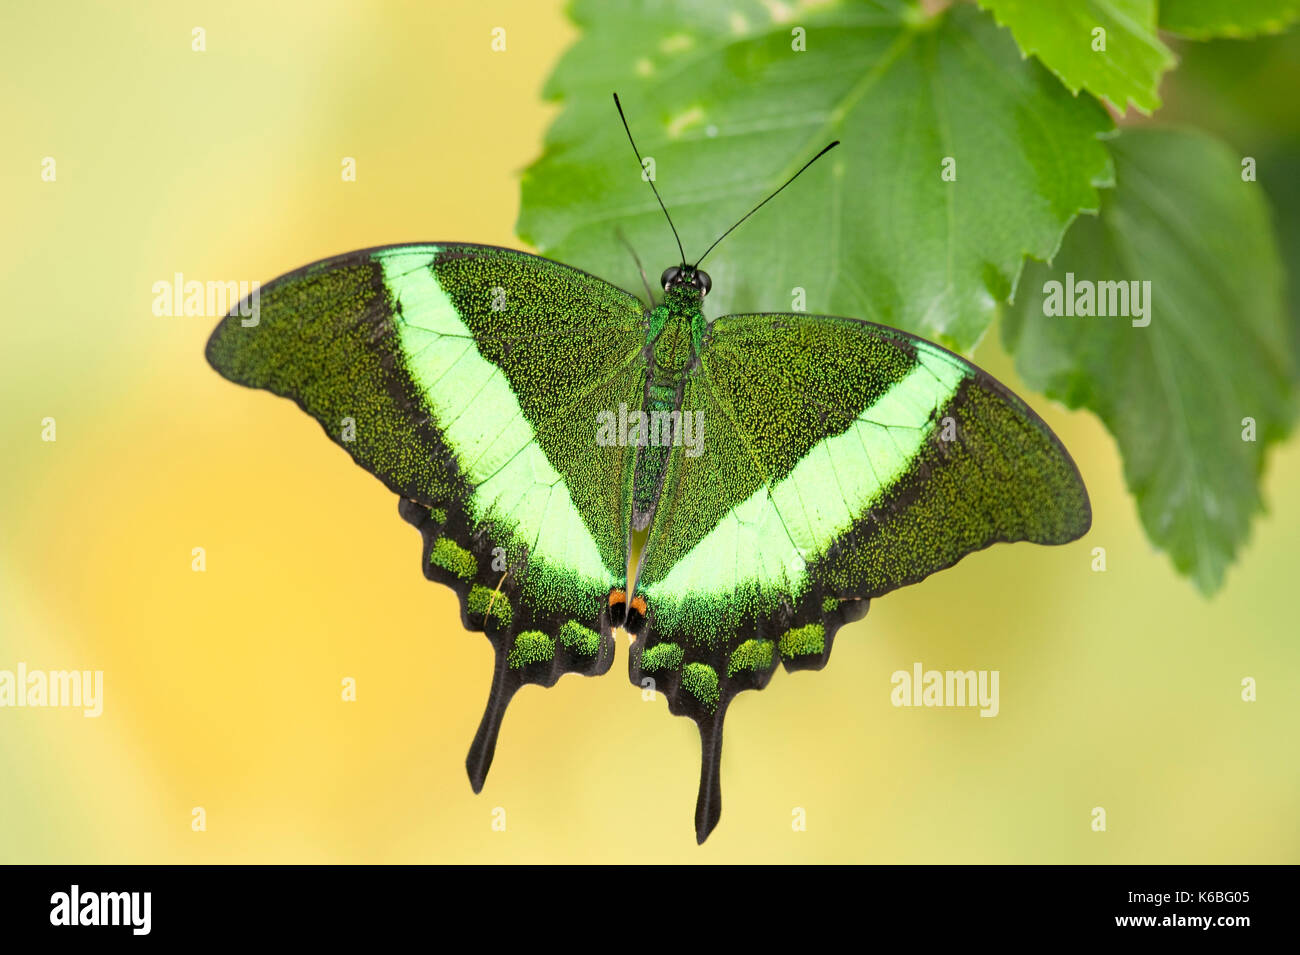 Emerald Schwalbenschwanz Schmetterling, Papilio Palinurus-arten, Südasien, ruht mit Flügeln öffnen, Farbe grün Stockfoto